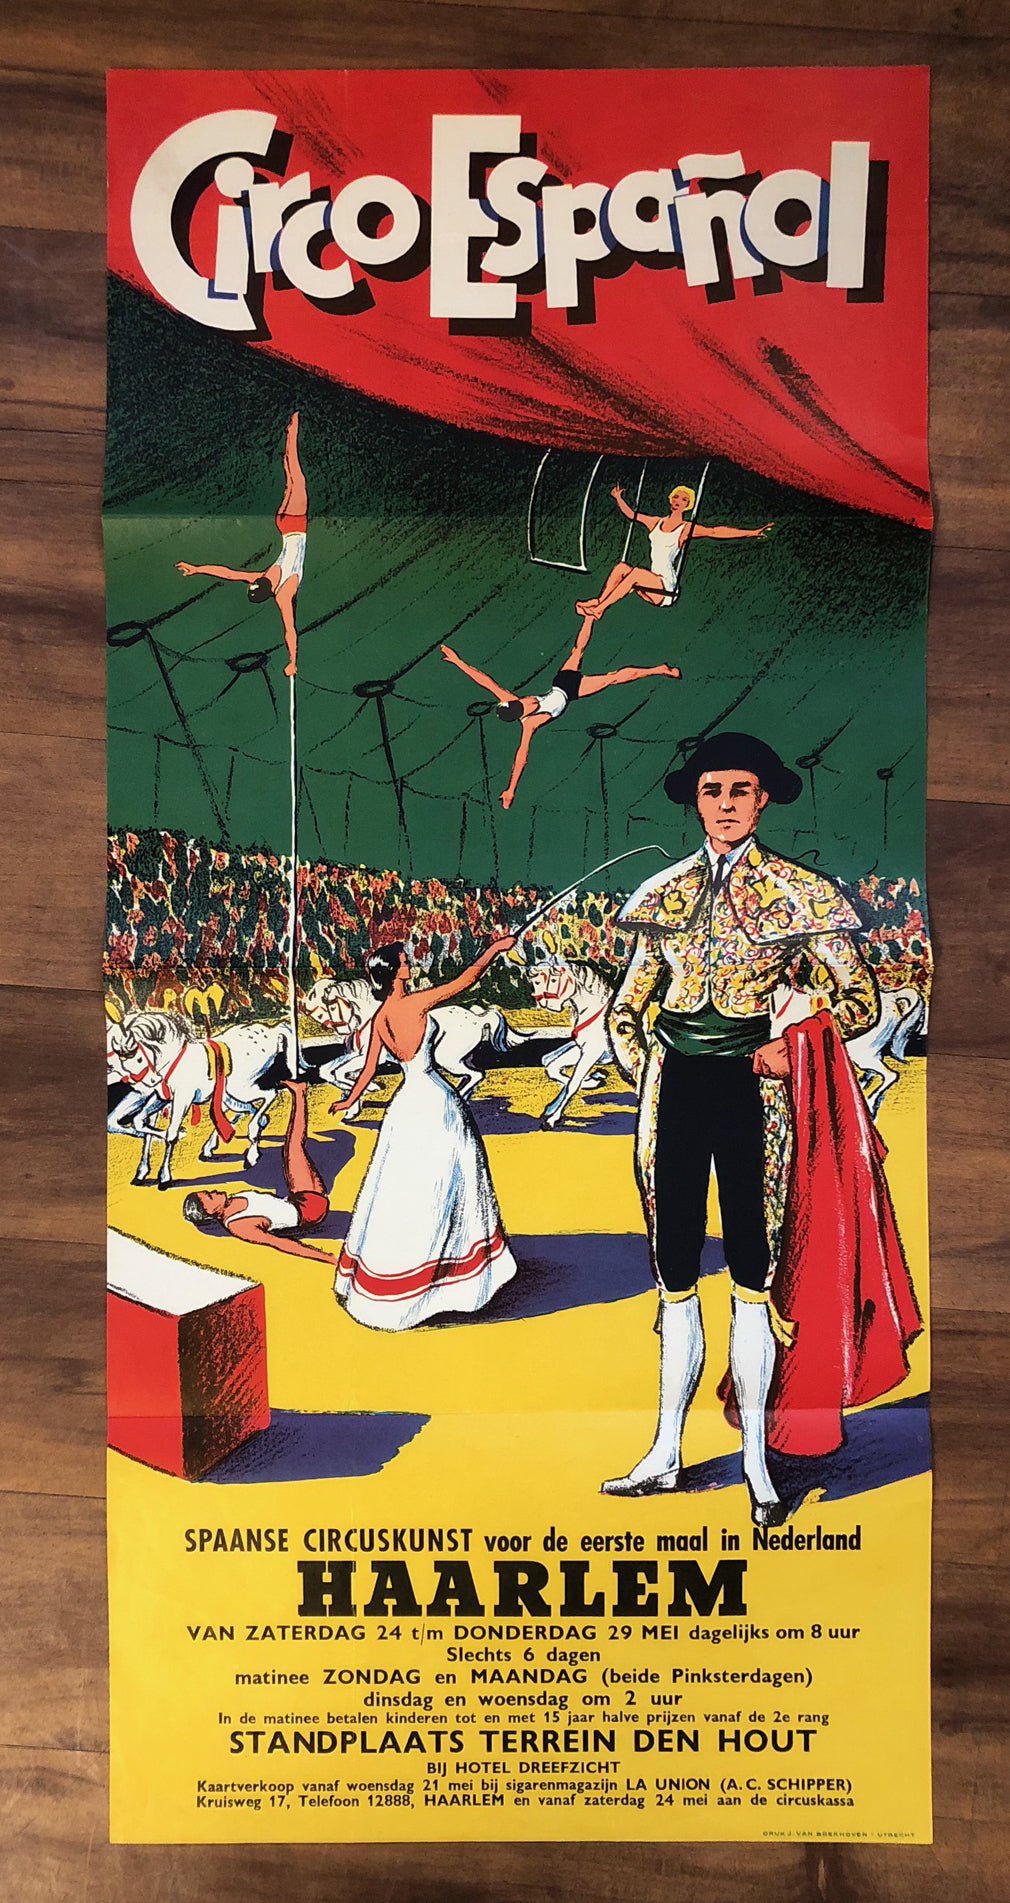 Circo Espanol, 1958